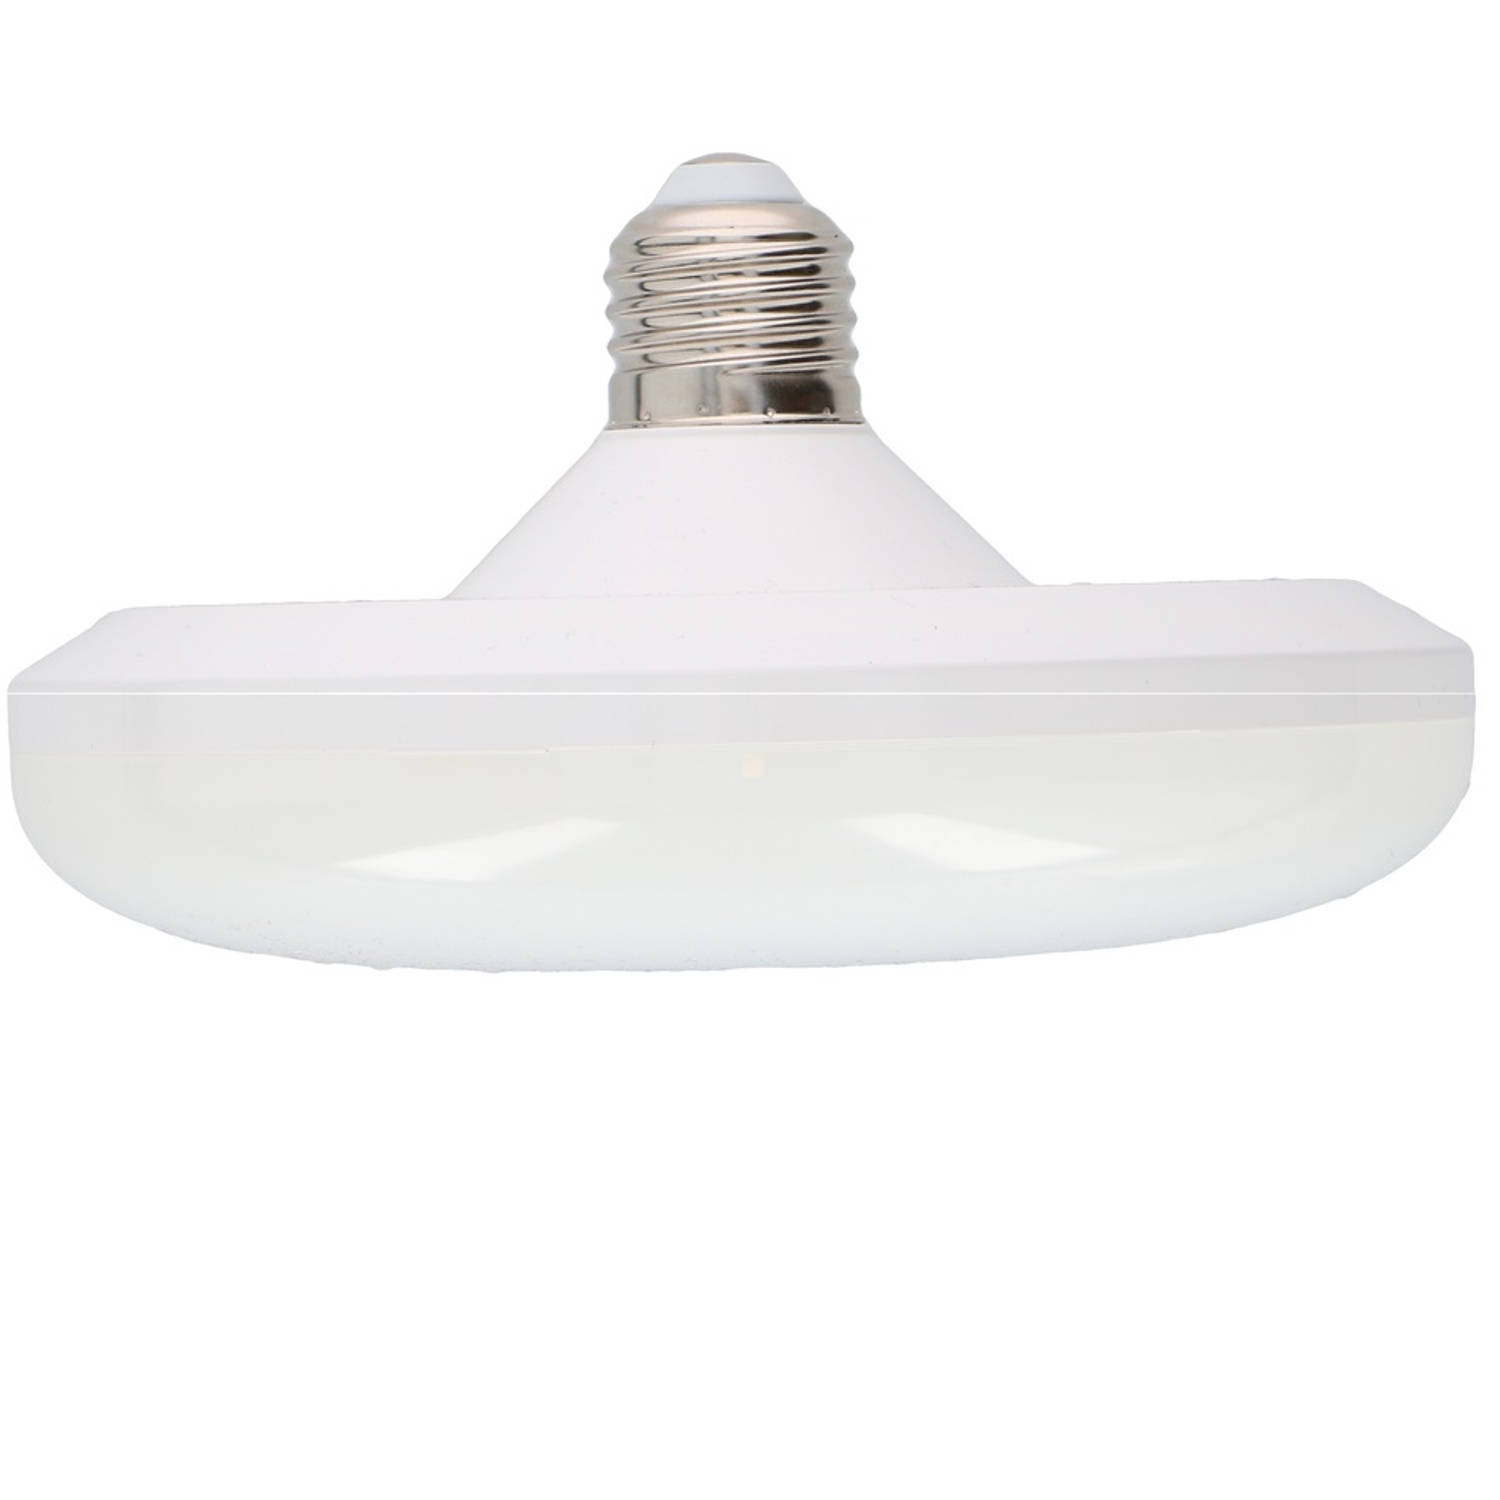 Grundig LED Hanglamp - E27 - 1350 Lumen - Uniek Design - Warm Wit Licht